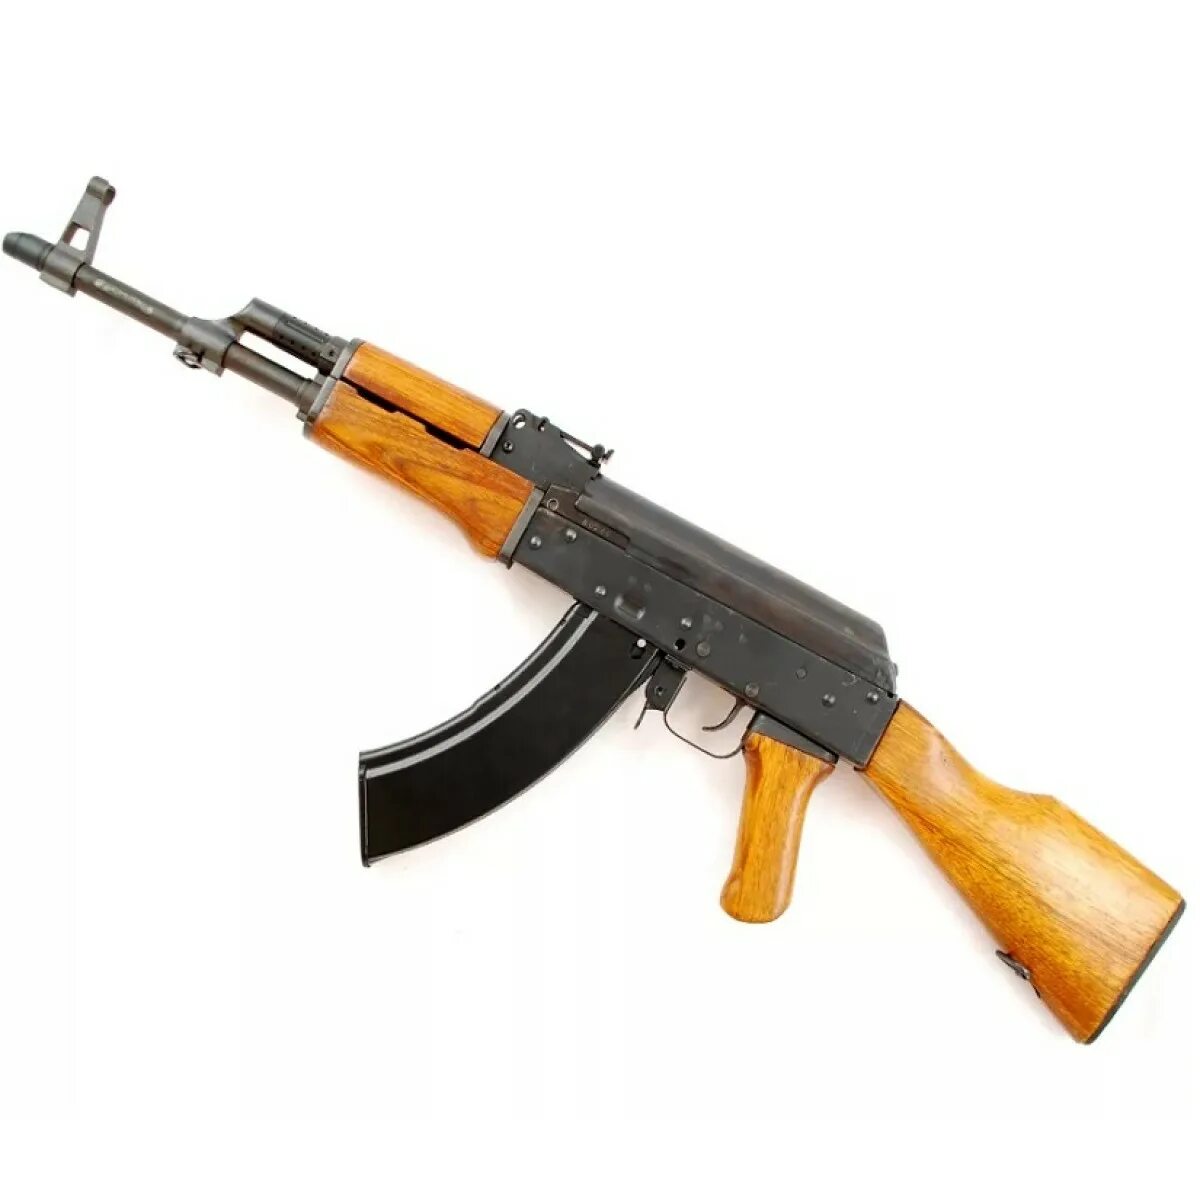 Ак мс. Cybergun AK 47. Пневматический автомат Stalker s47. АК 47 Galaxy g27. Автомат Калашникова АК-47 (T.A.R.G.).